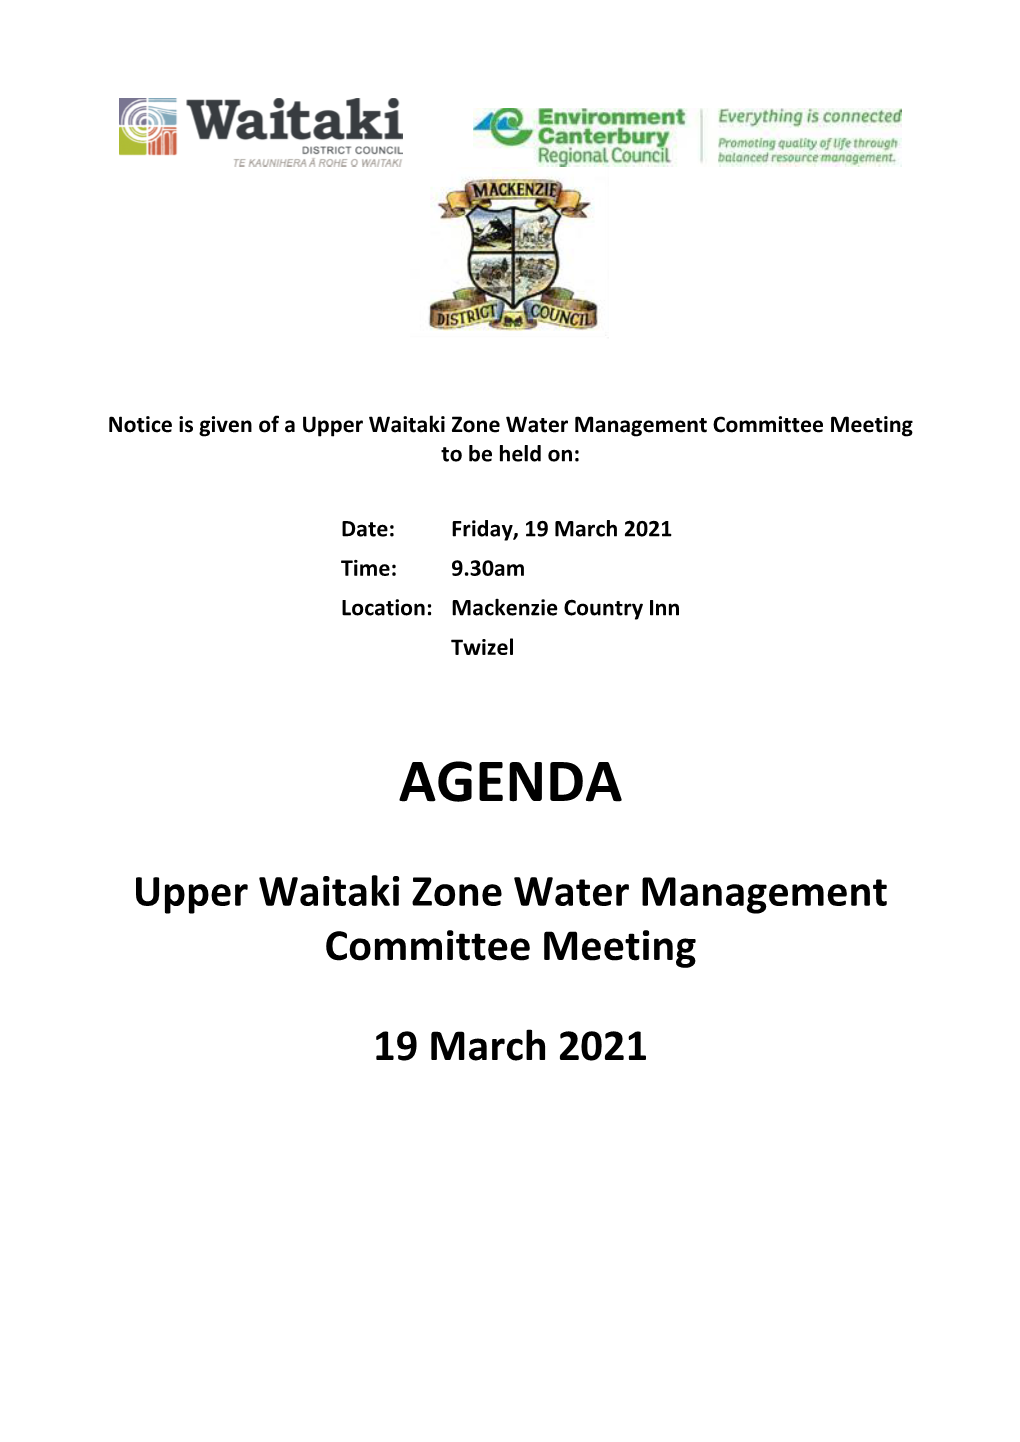 Agenda of Upper Waitaki Zone Water Management Committee Meeting